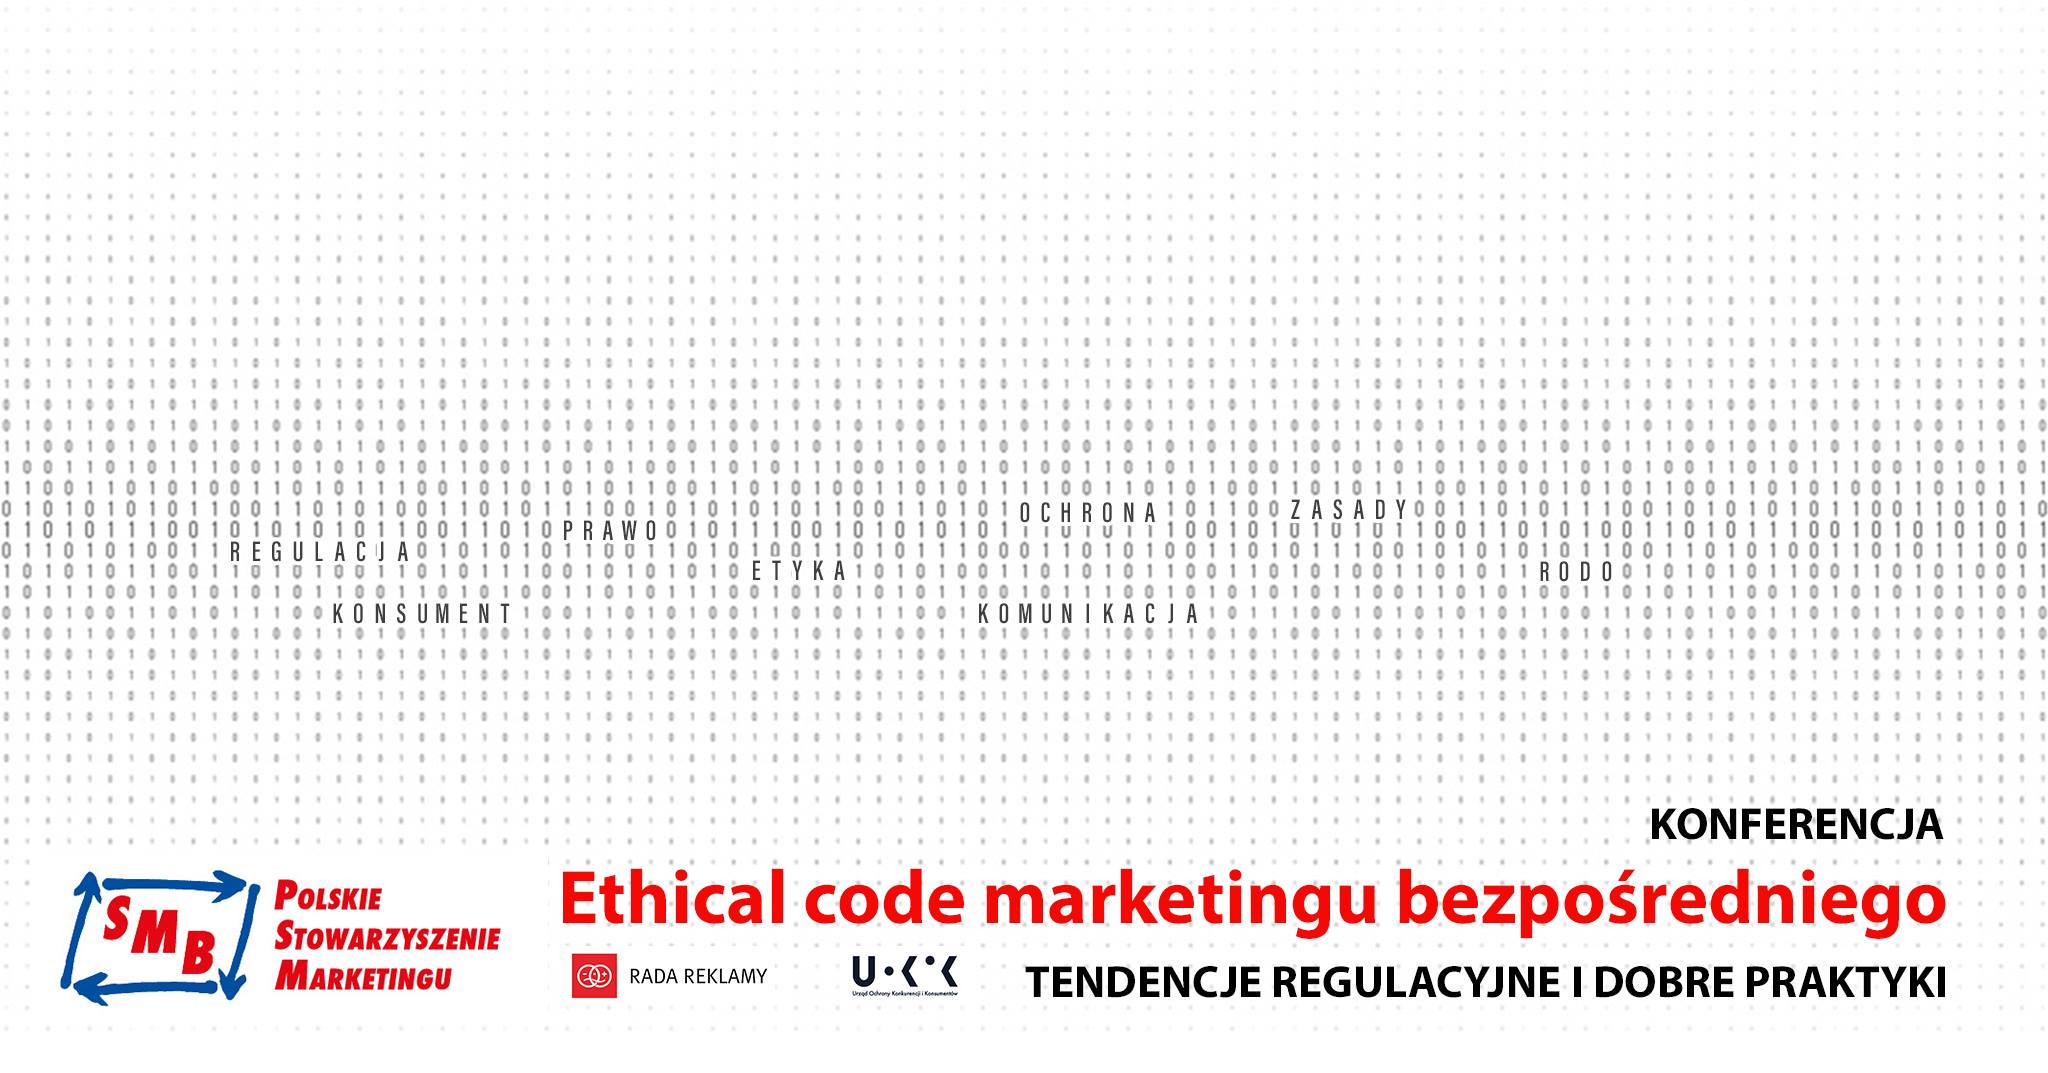 Konferencja „Ethical code marketingu bezpośredniego” – zapraszamy!